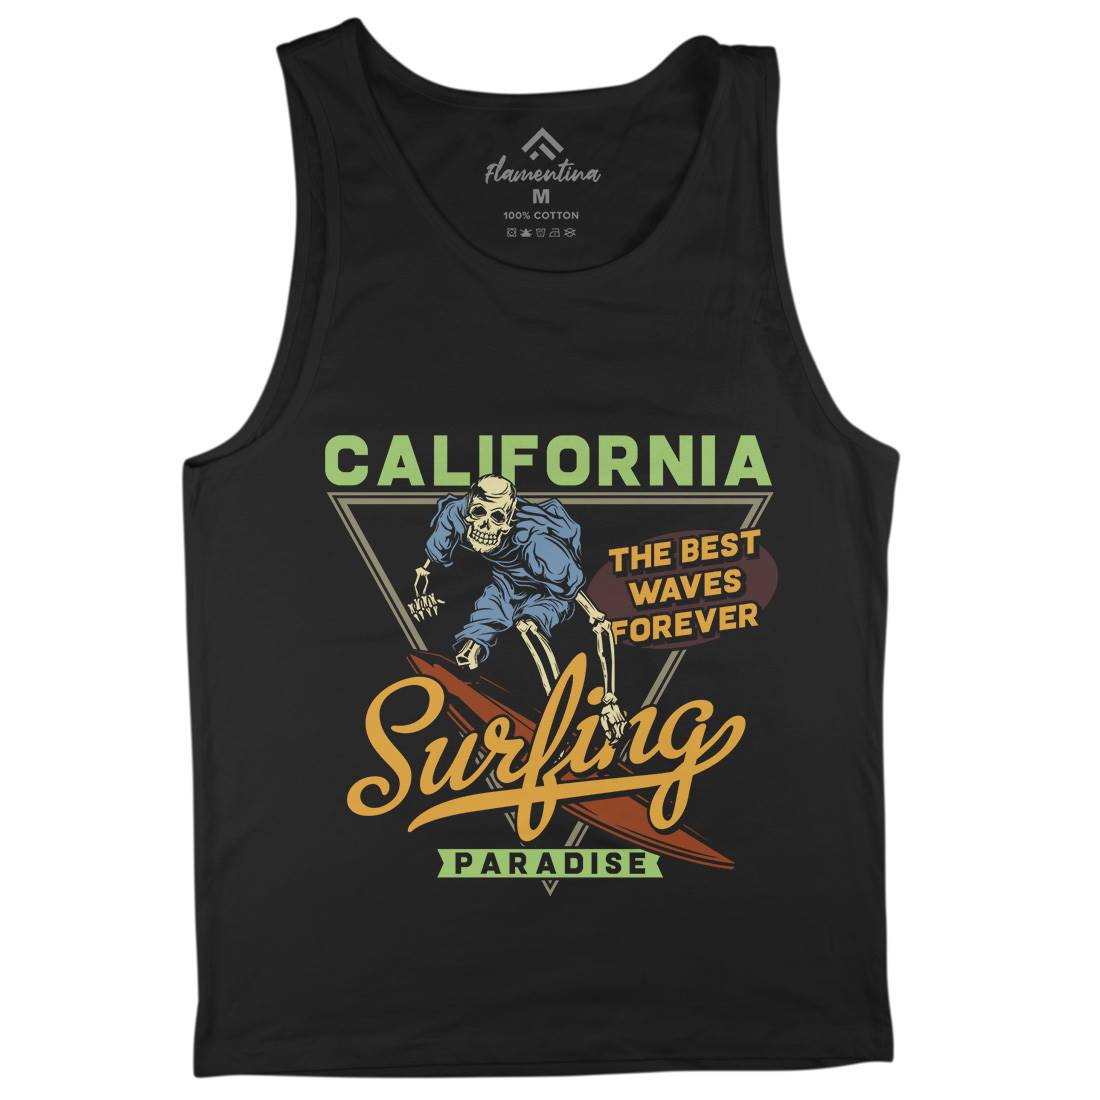 California Surfing Mens Tank Top Vest Surf B875